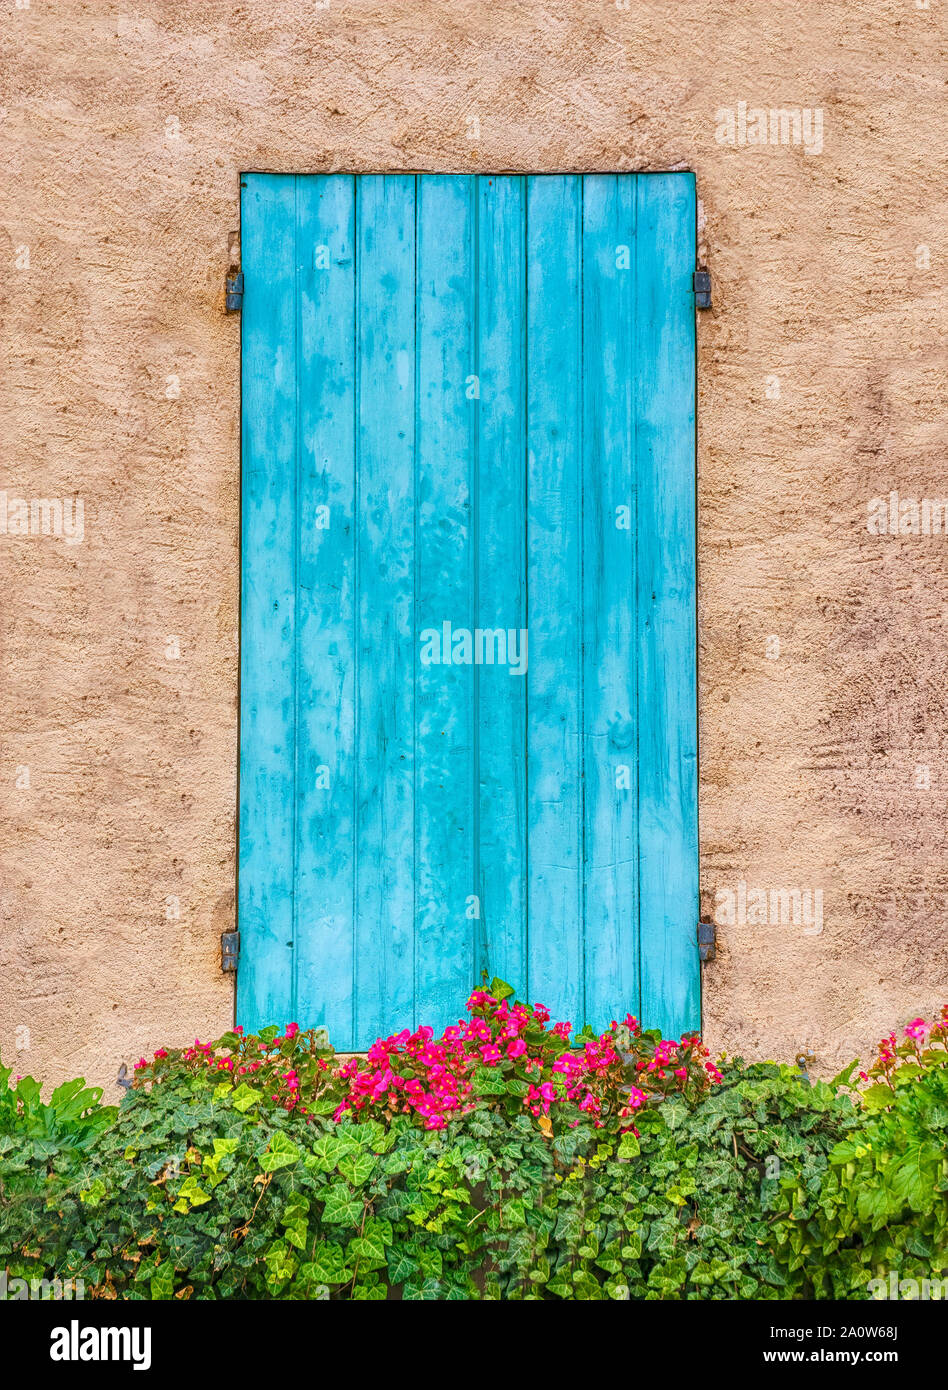 Hübsche blaue Fensterläden aus Holz, die aussehen wie eine Tür, mit Blumen wachsen in ein Fenster, in der Provence, Frankreich. Stockfoto